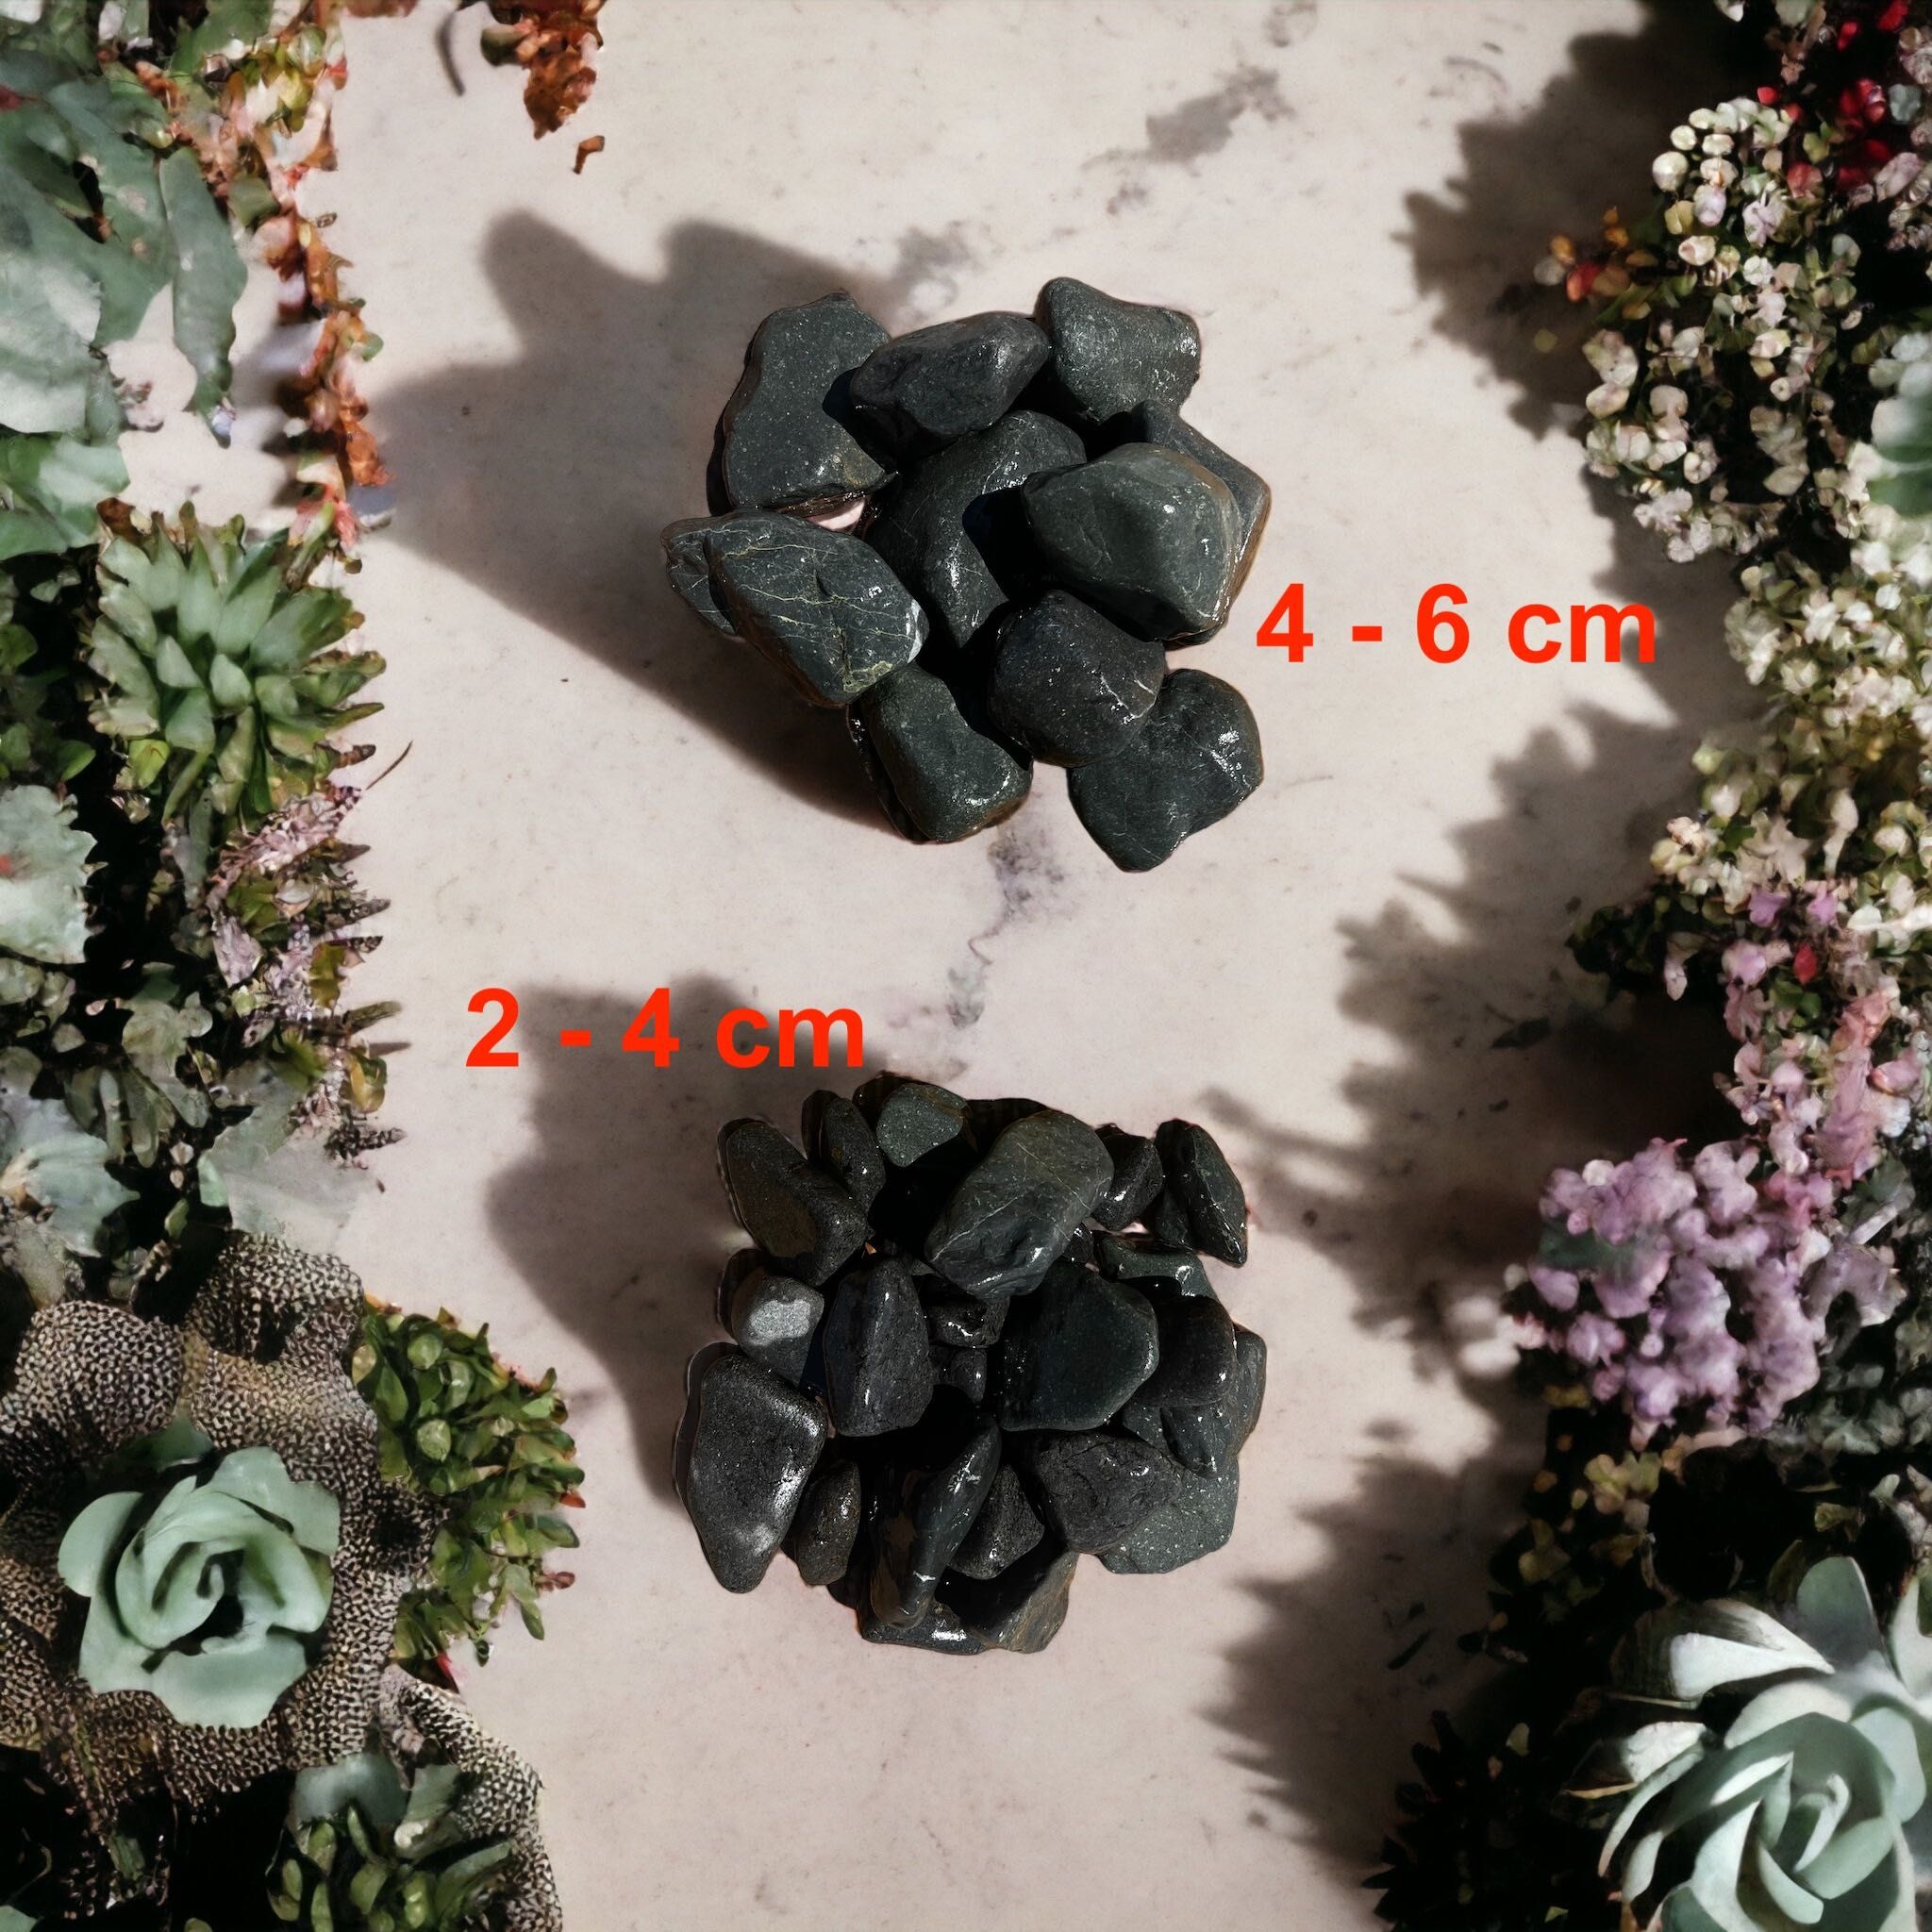 Kamień ozdobny ogrodowy Otoczak Black - 2-4 cm , 4-6 cm PROMOCJA 20kg